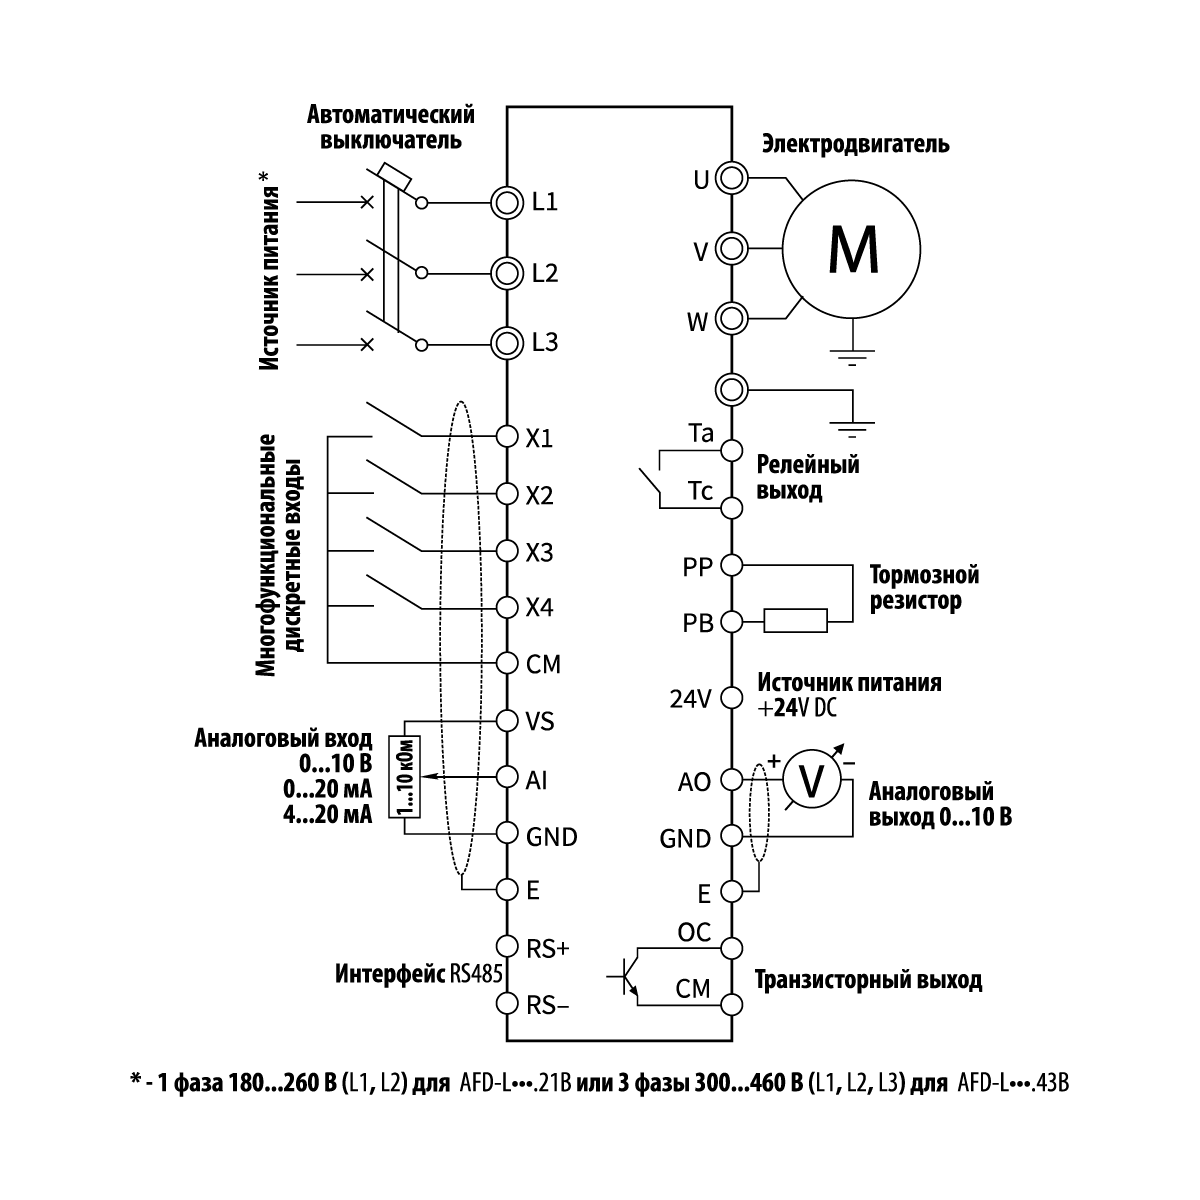 Схема электрических соединений